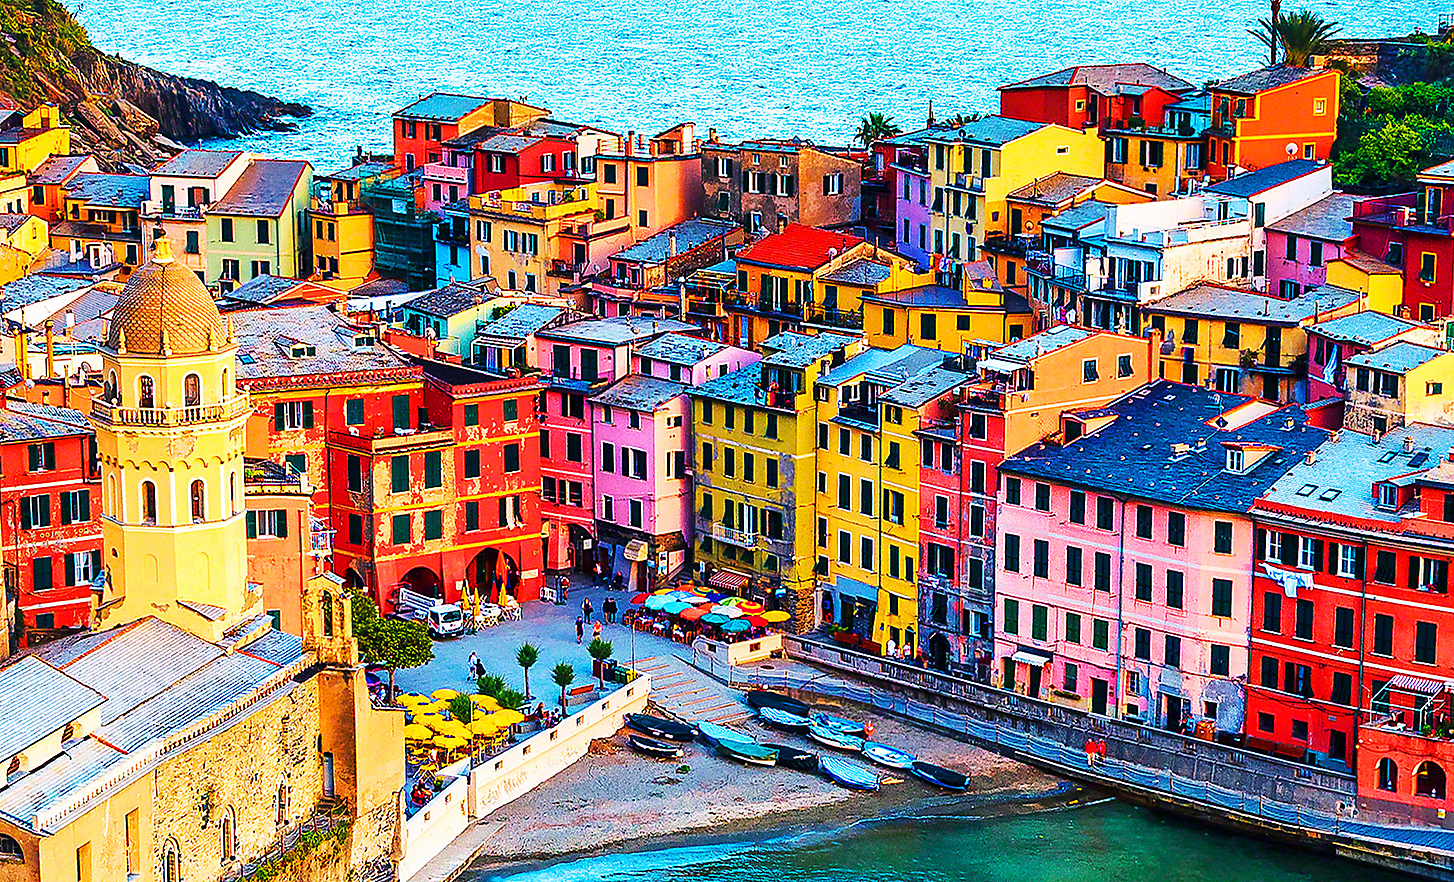 Immagine soleggiata di un piccolo paese di mare con tanti edifici colorati, bar e barche da pesca